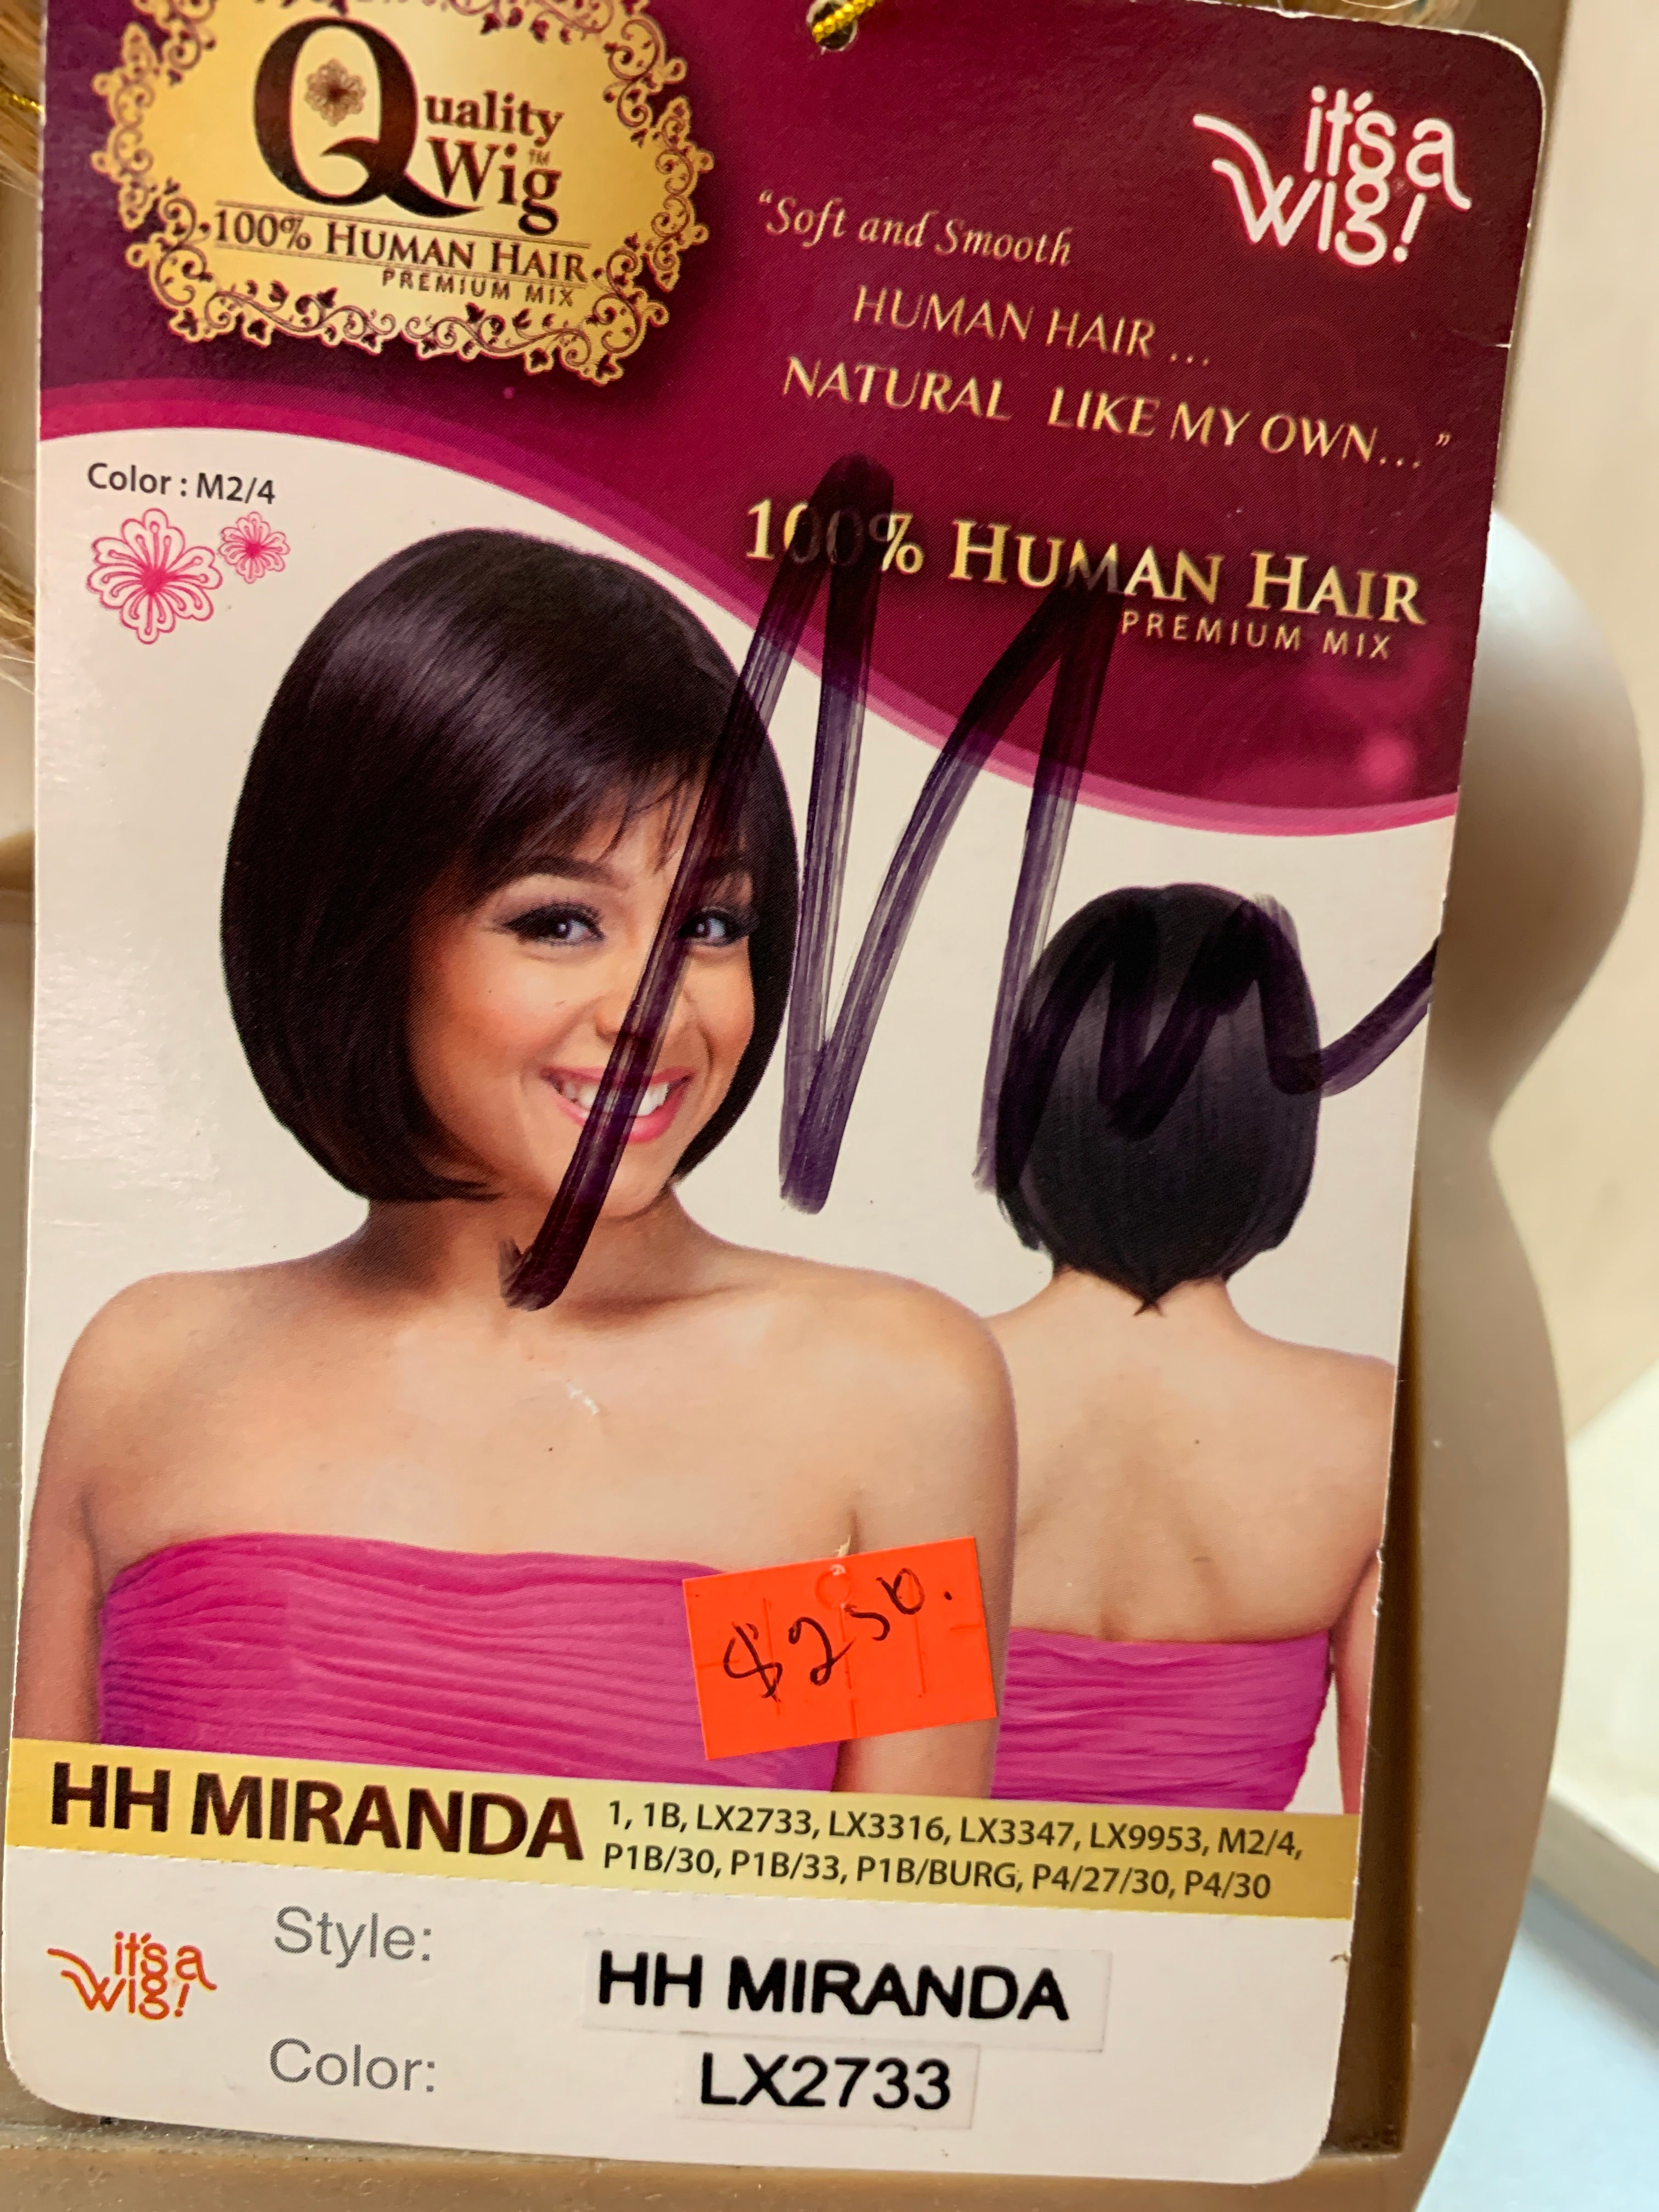 It’s a wig hh Miranda